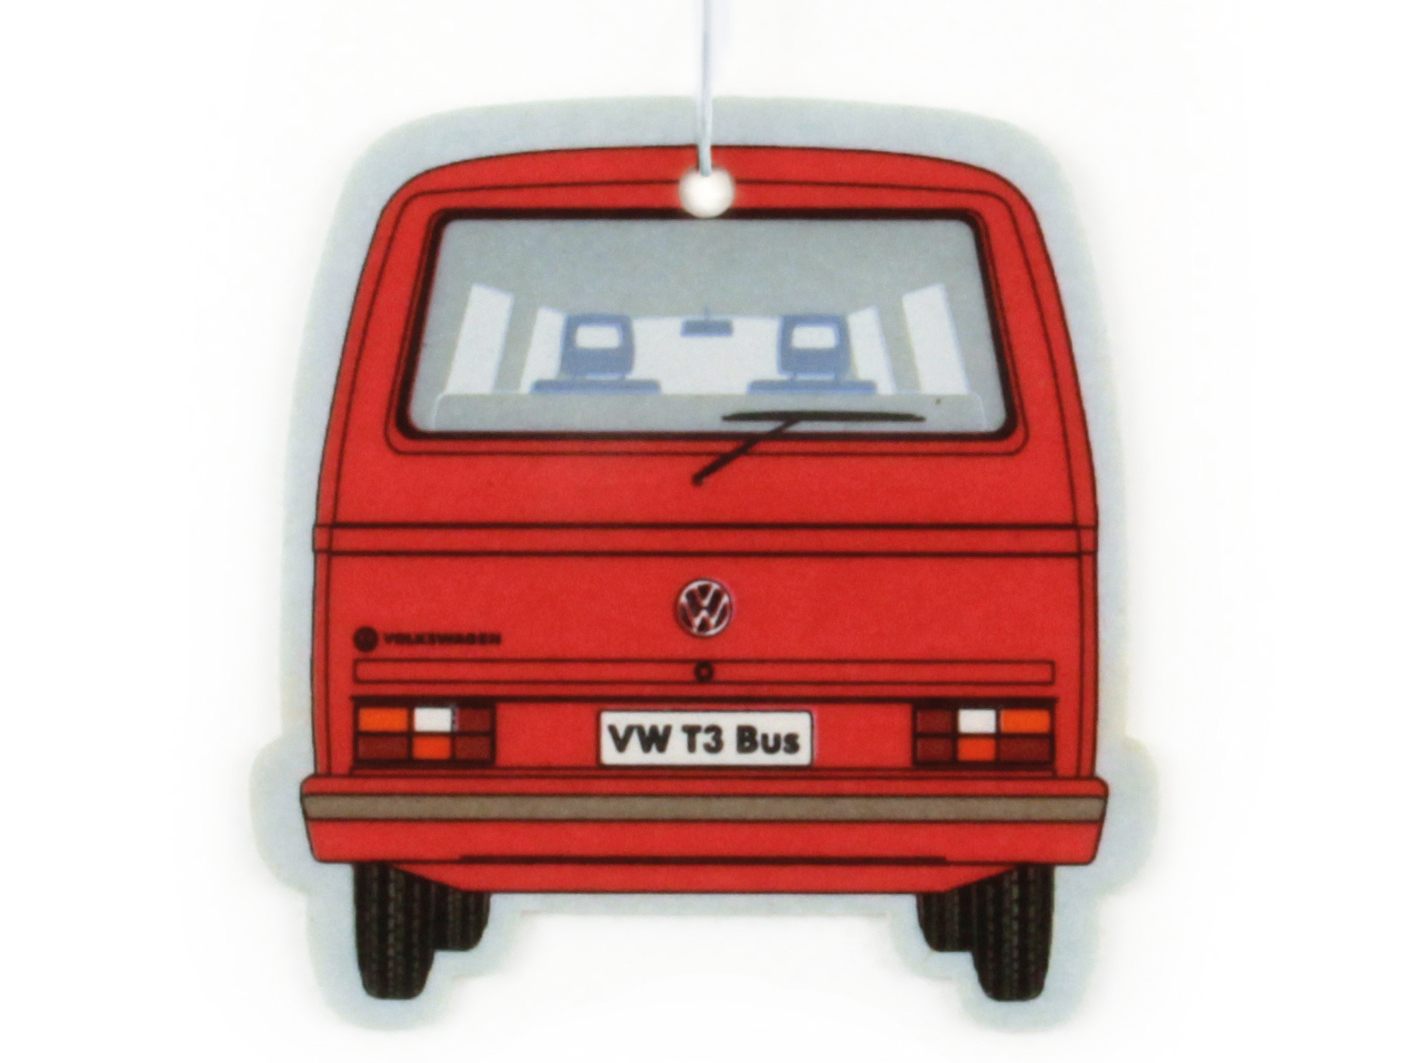 VW T3 Bulli bus air freshener